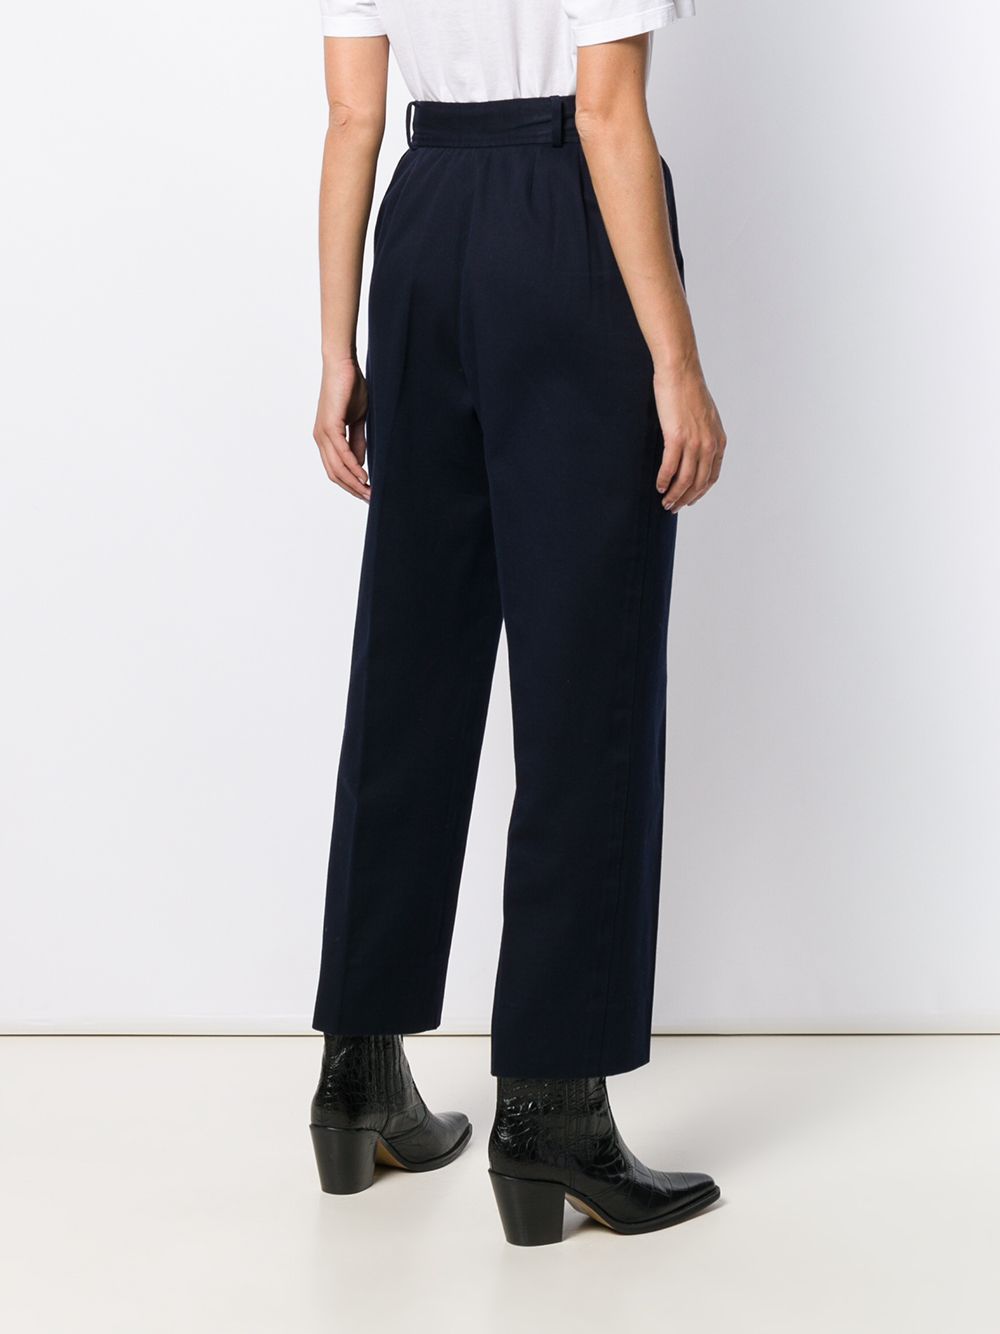 фото Yves Saint Laurent Pre-Owned прямые брюки 1980-х годов